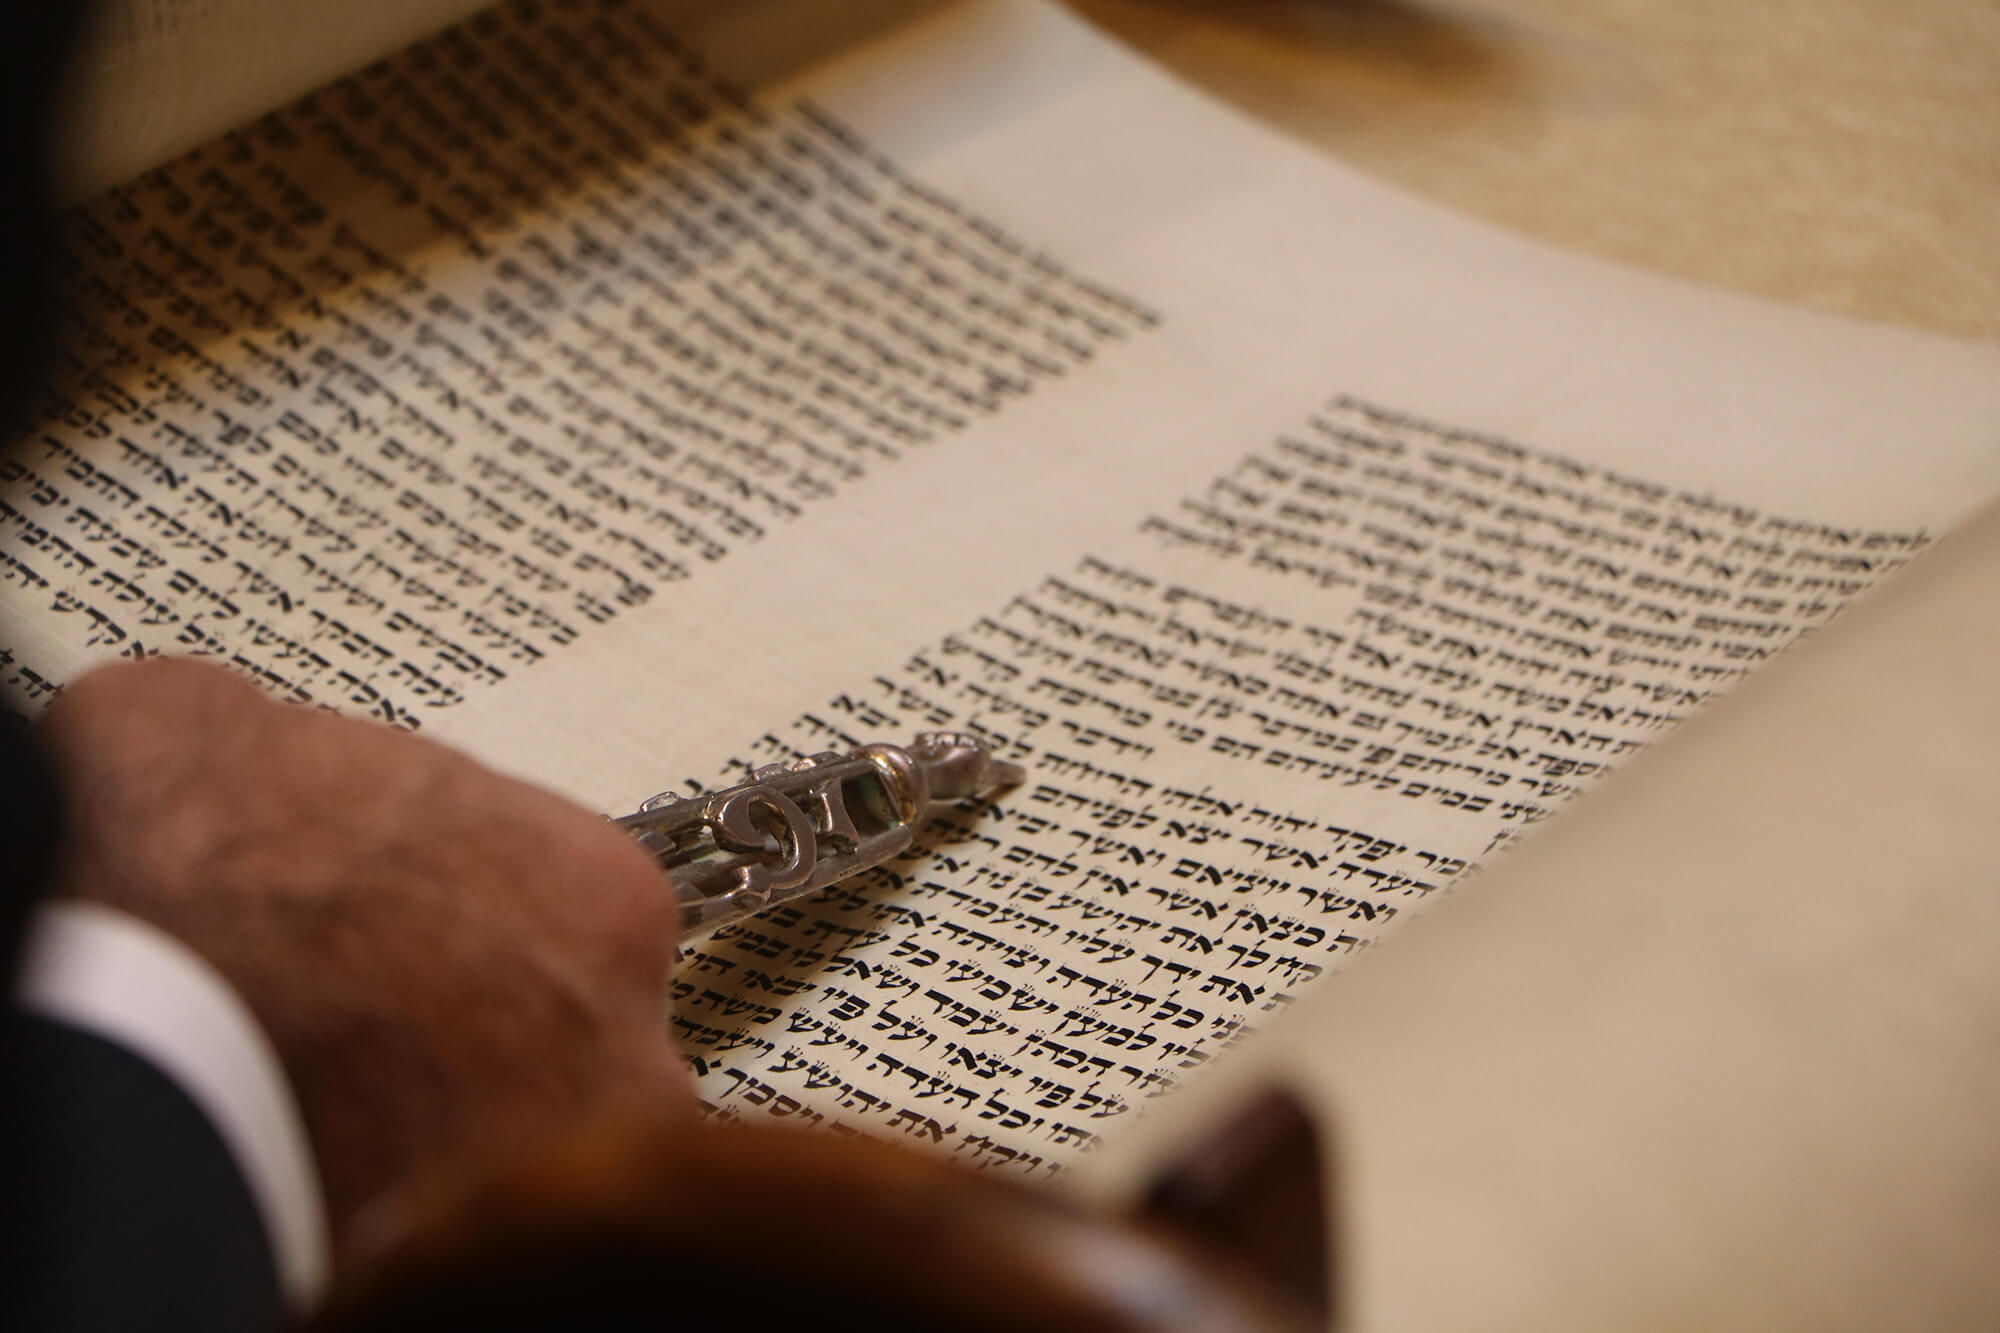 Sign up to Read Torah or Haftarah